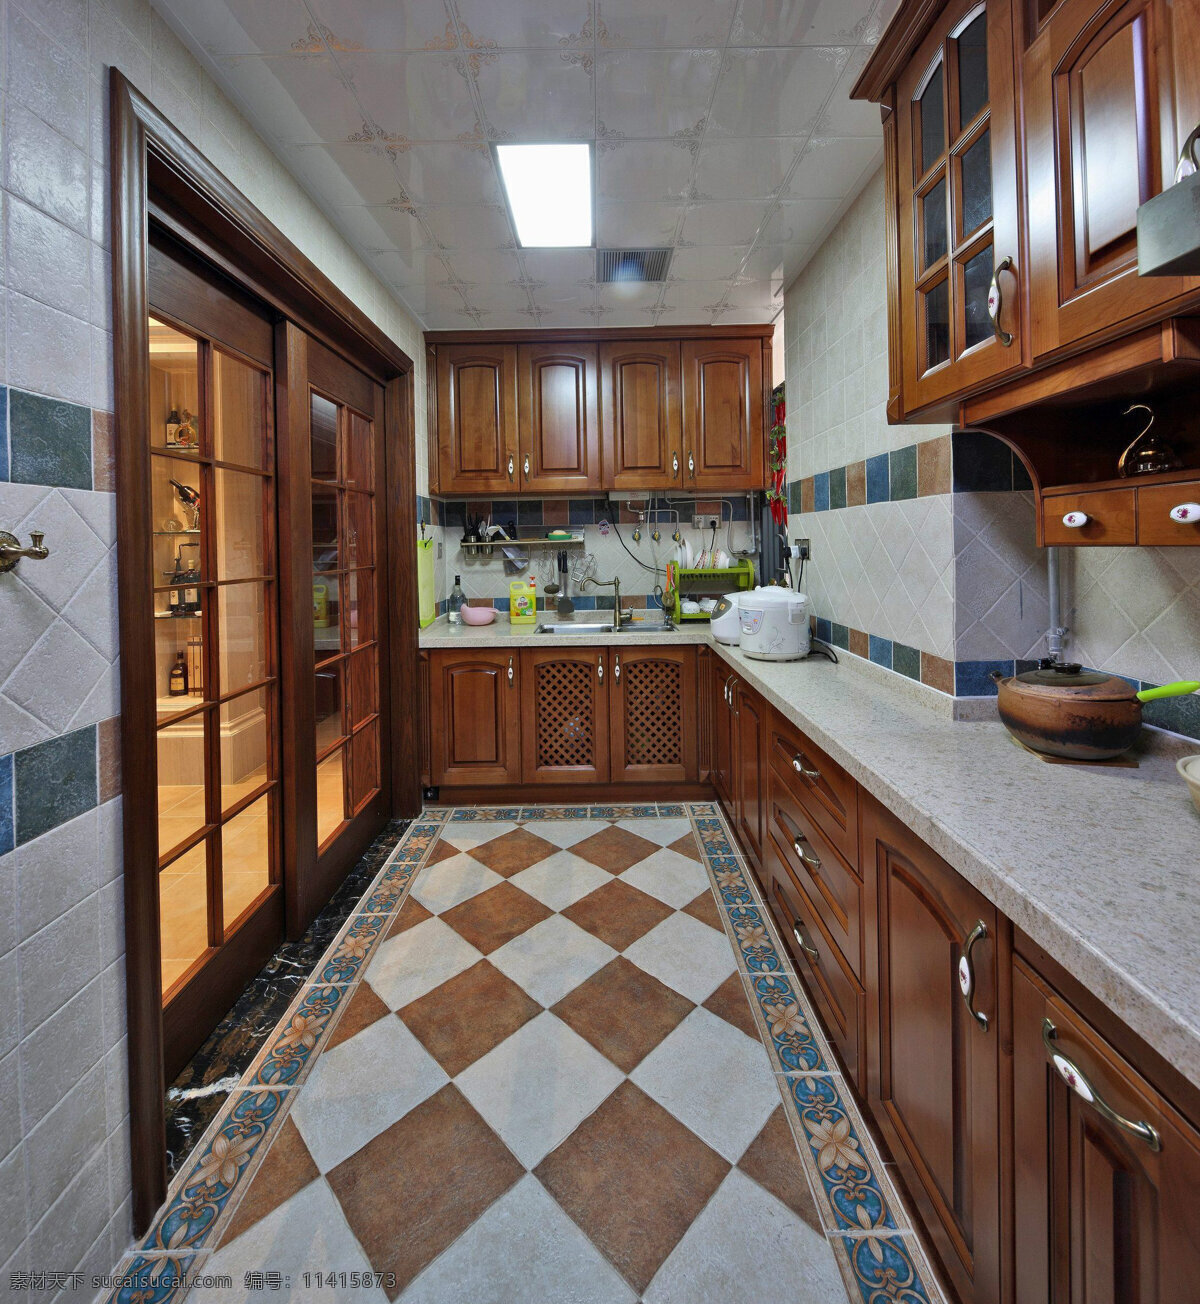 欧式 简约 风 室内设计 厨房 拼接 地砖 效果图 现代 料理台 格子地板 落地窗 推拉门 家装